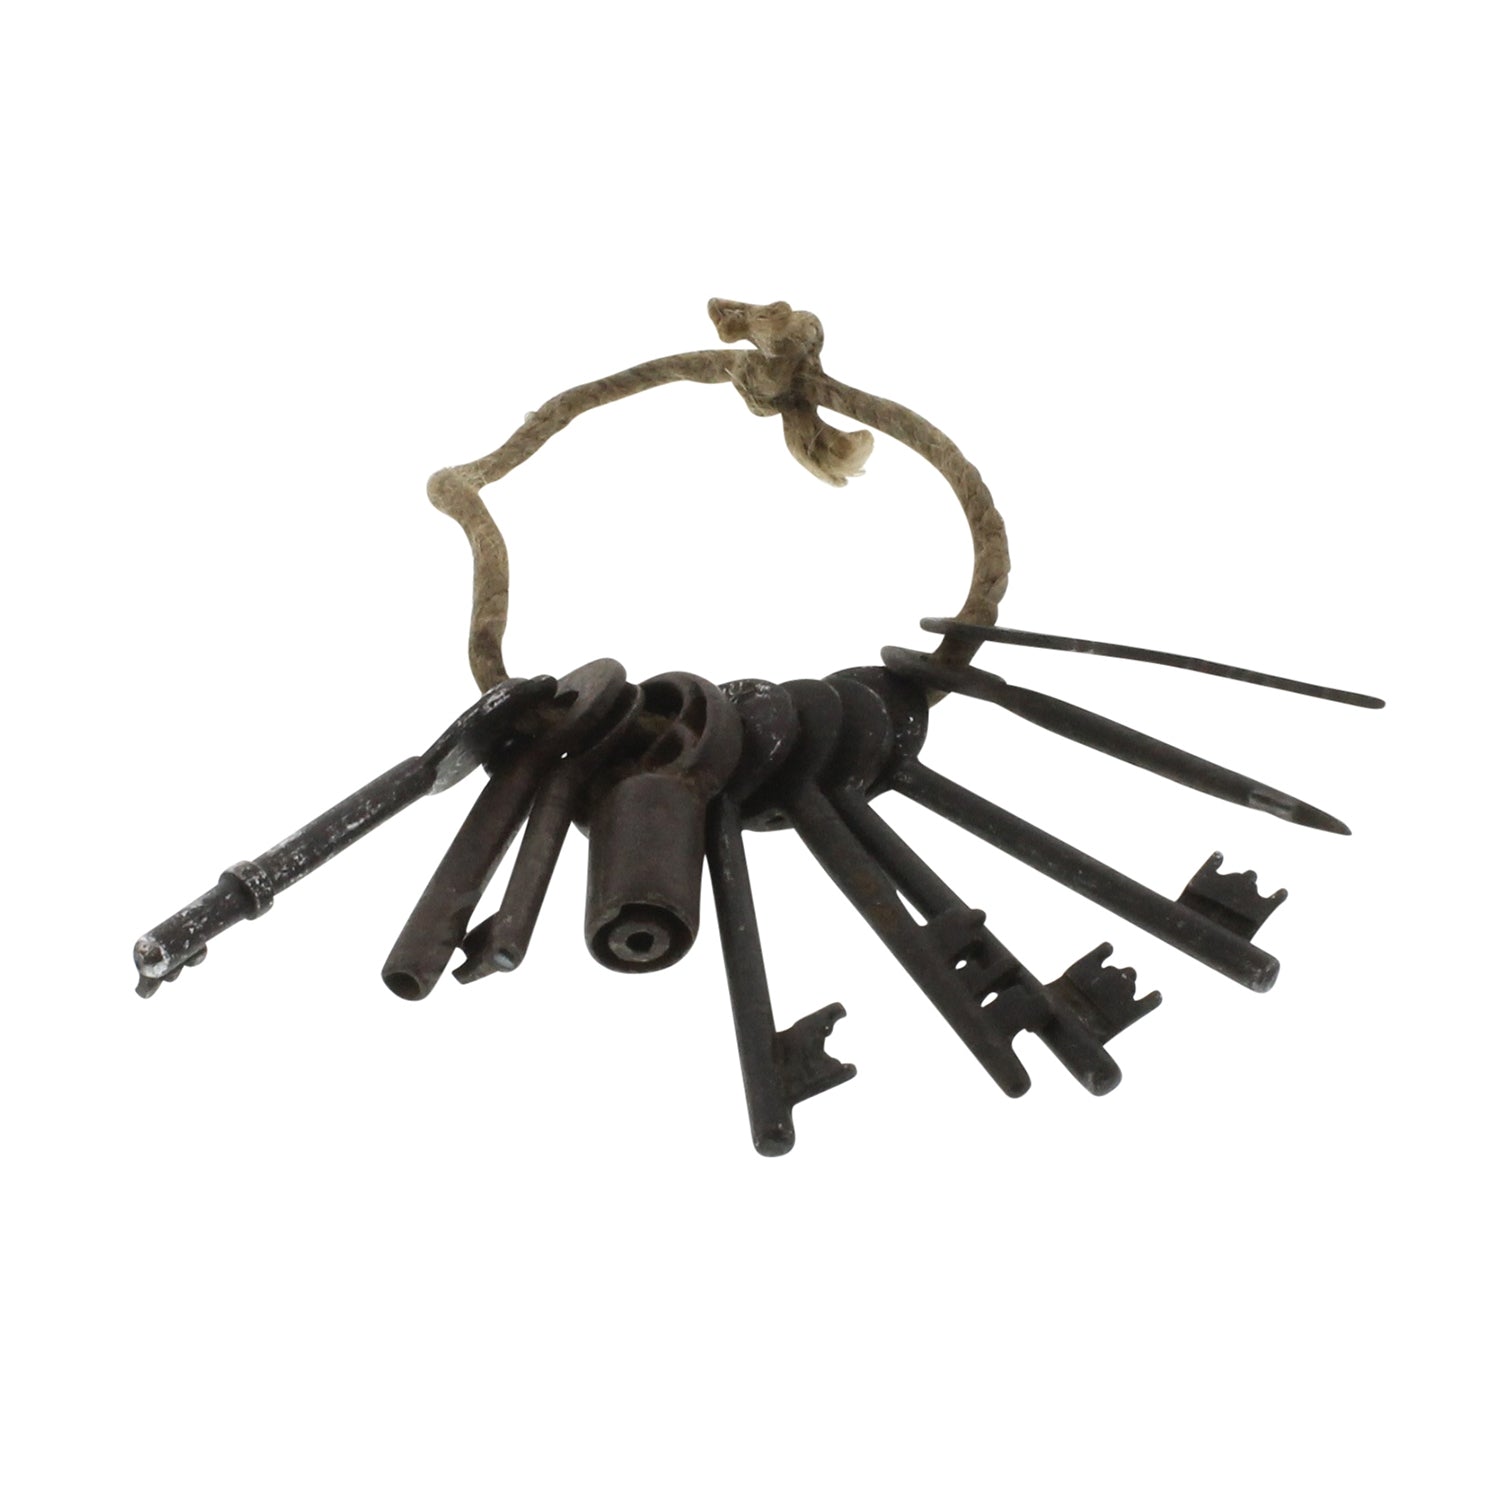 Found Metal Keys - Ring of 10